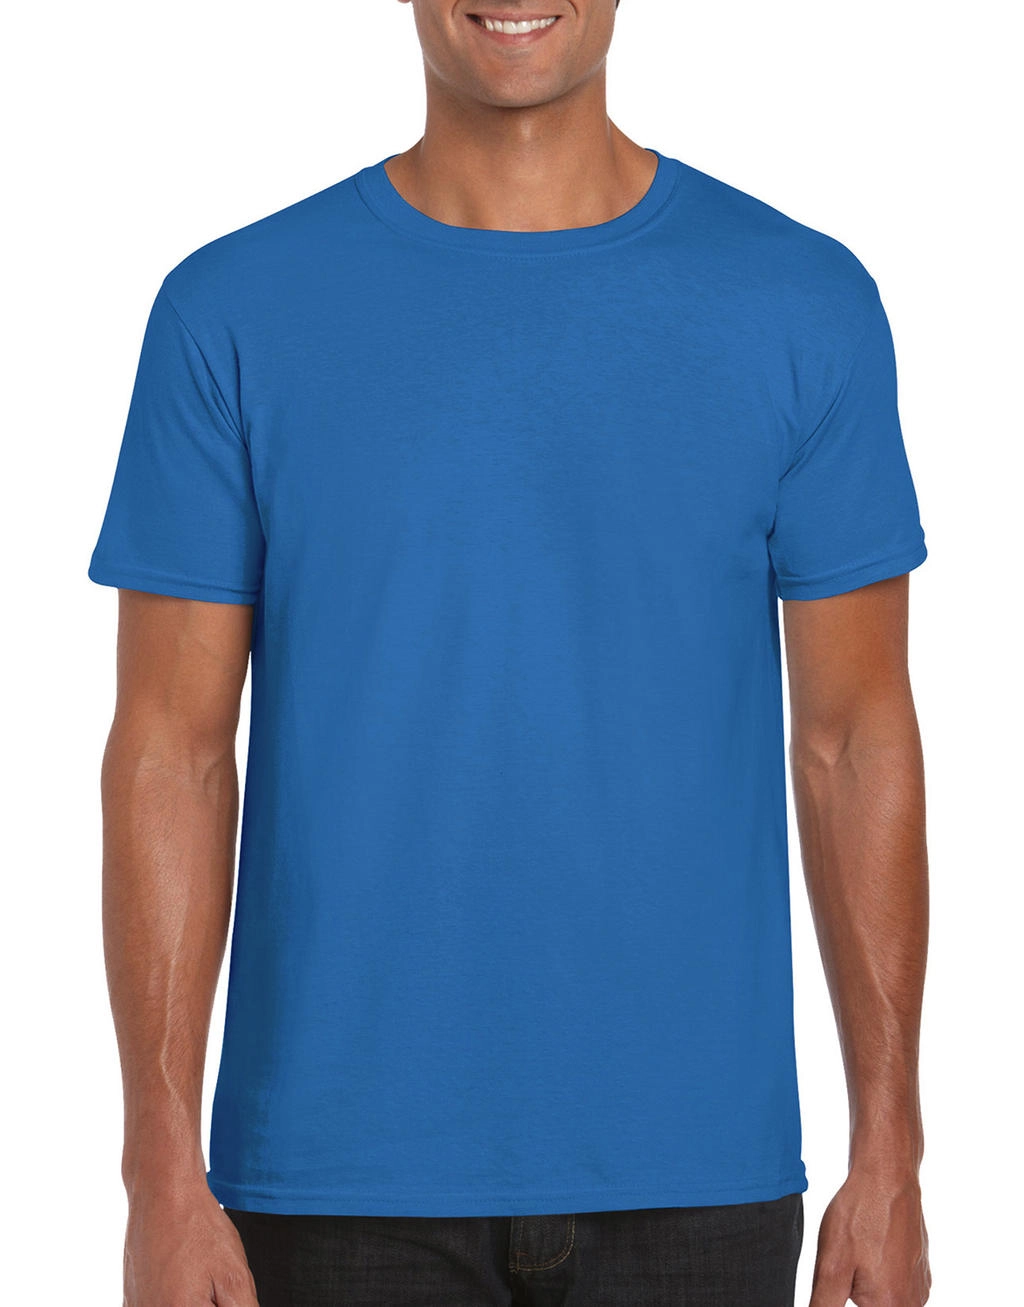 Softstyle® Ring Spun T-Shirt zum Besticken und Bedrucken in der Farbe Sapphire mit Ihren Logo, Schriftzug oder Motiv.